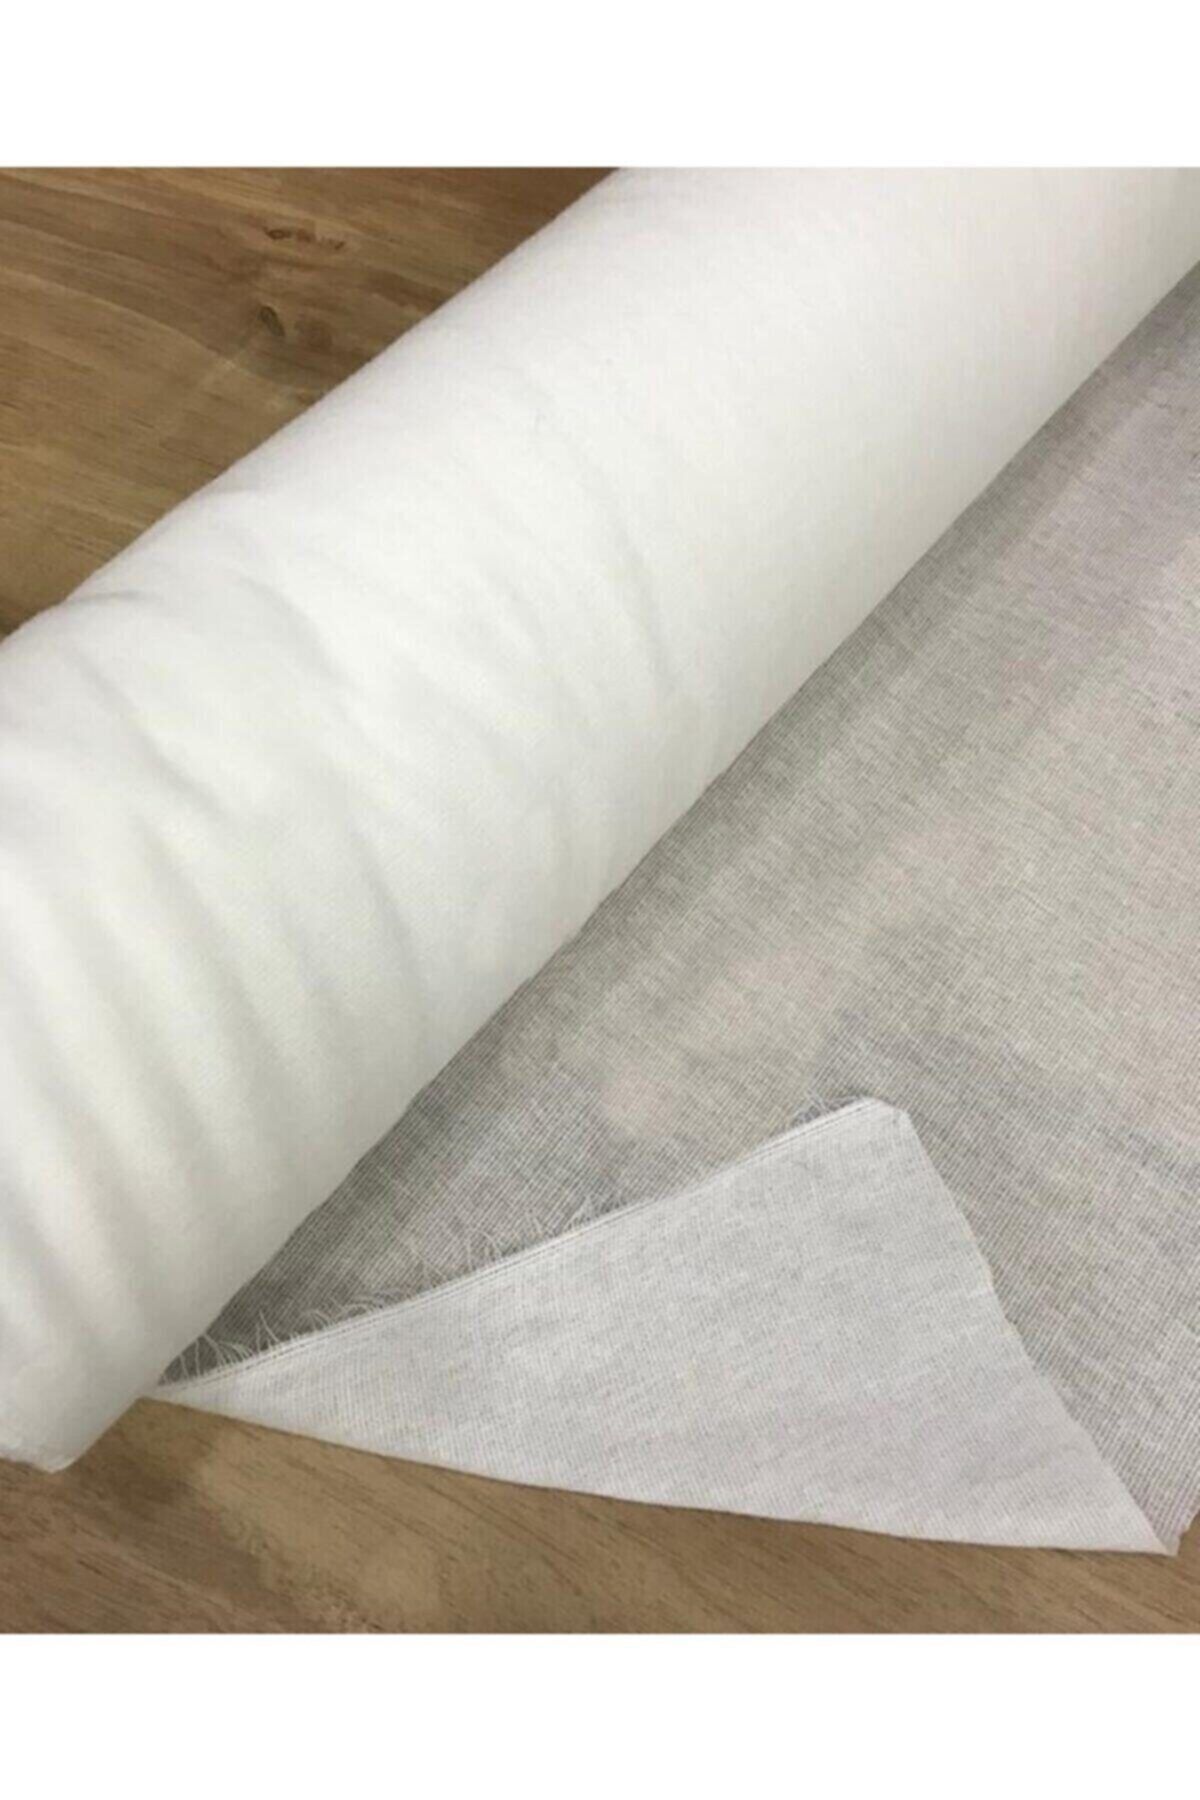 Kezban Tekstil Tek Tarafı Yapışkanlı Bez Tela Beyaz Yapışkan 1 Metre 95 Cm * 100 Cm